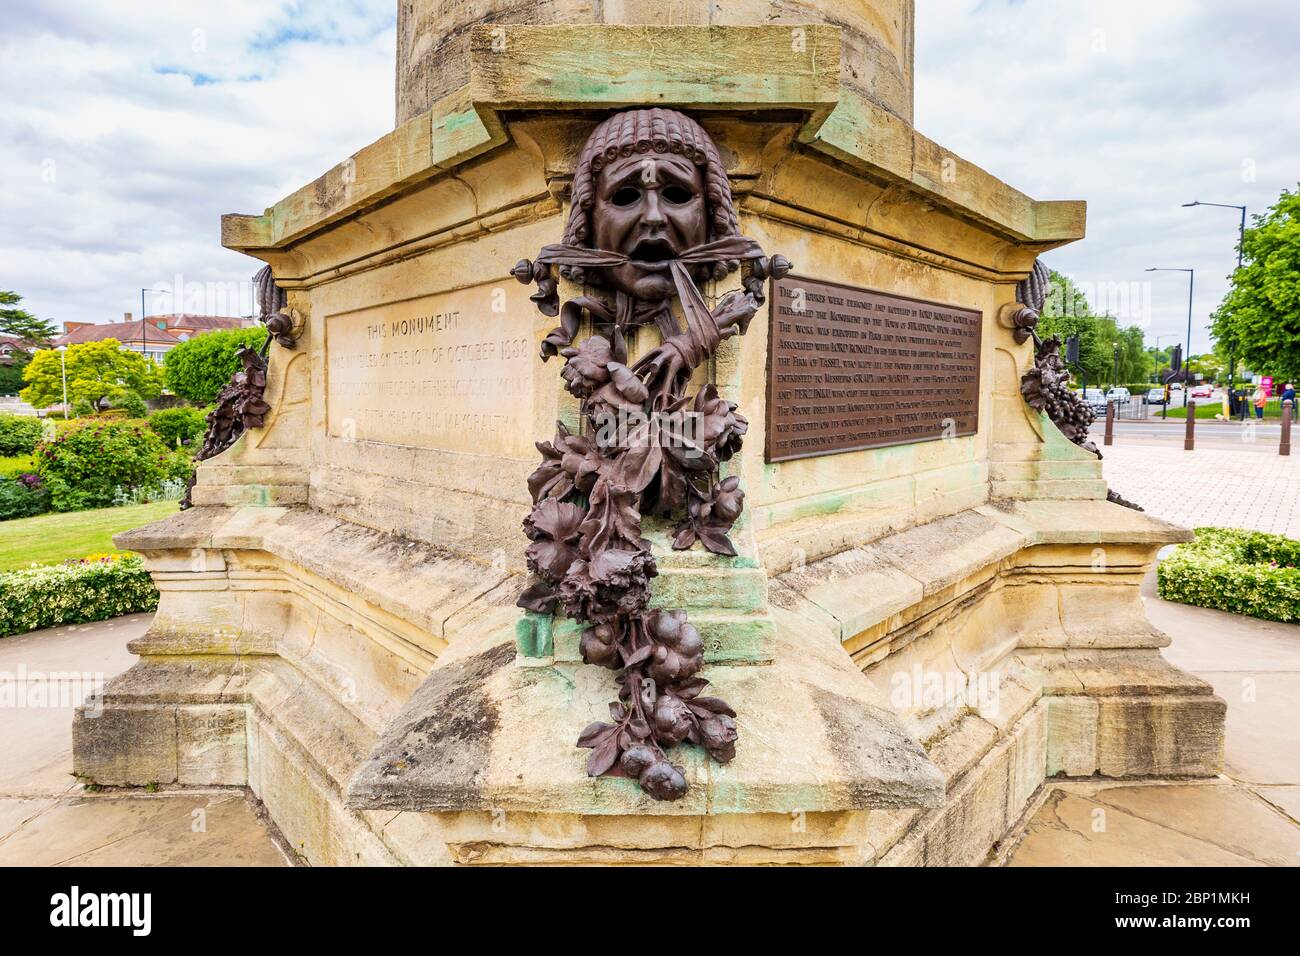 Una maschera teatrale greca sul Monumento Gower che rappresenta una tragedia con papaveri e peonie, Stratford Upon Avon, Inghilterra Foto Stock